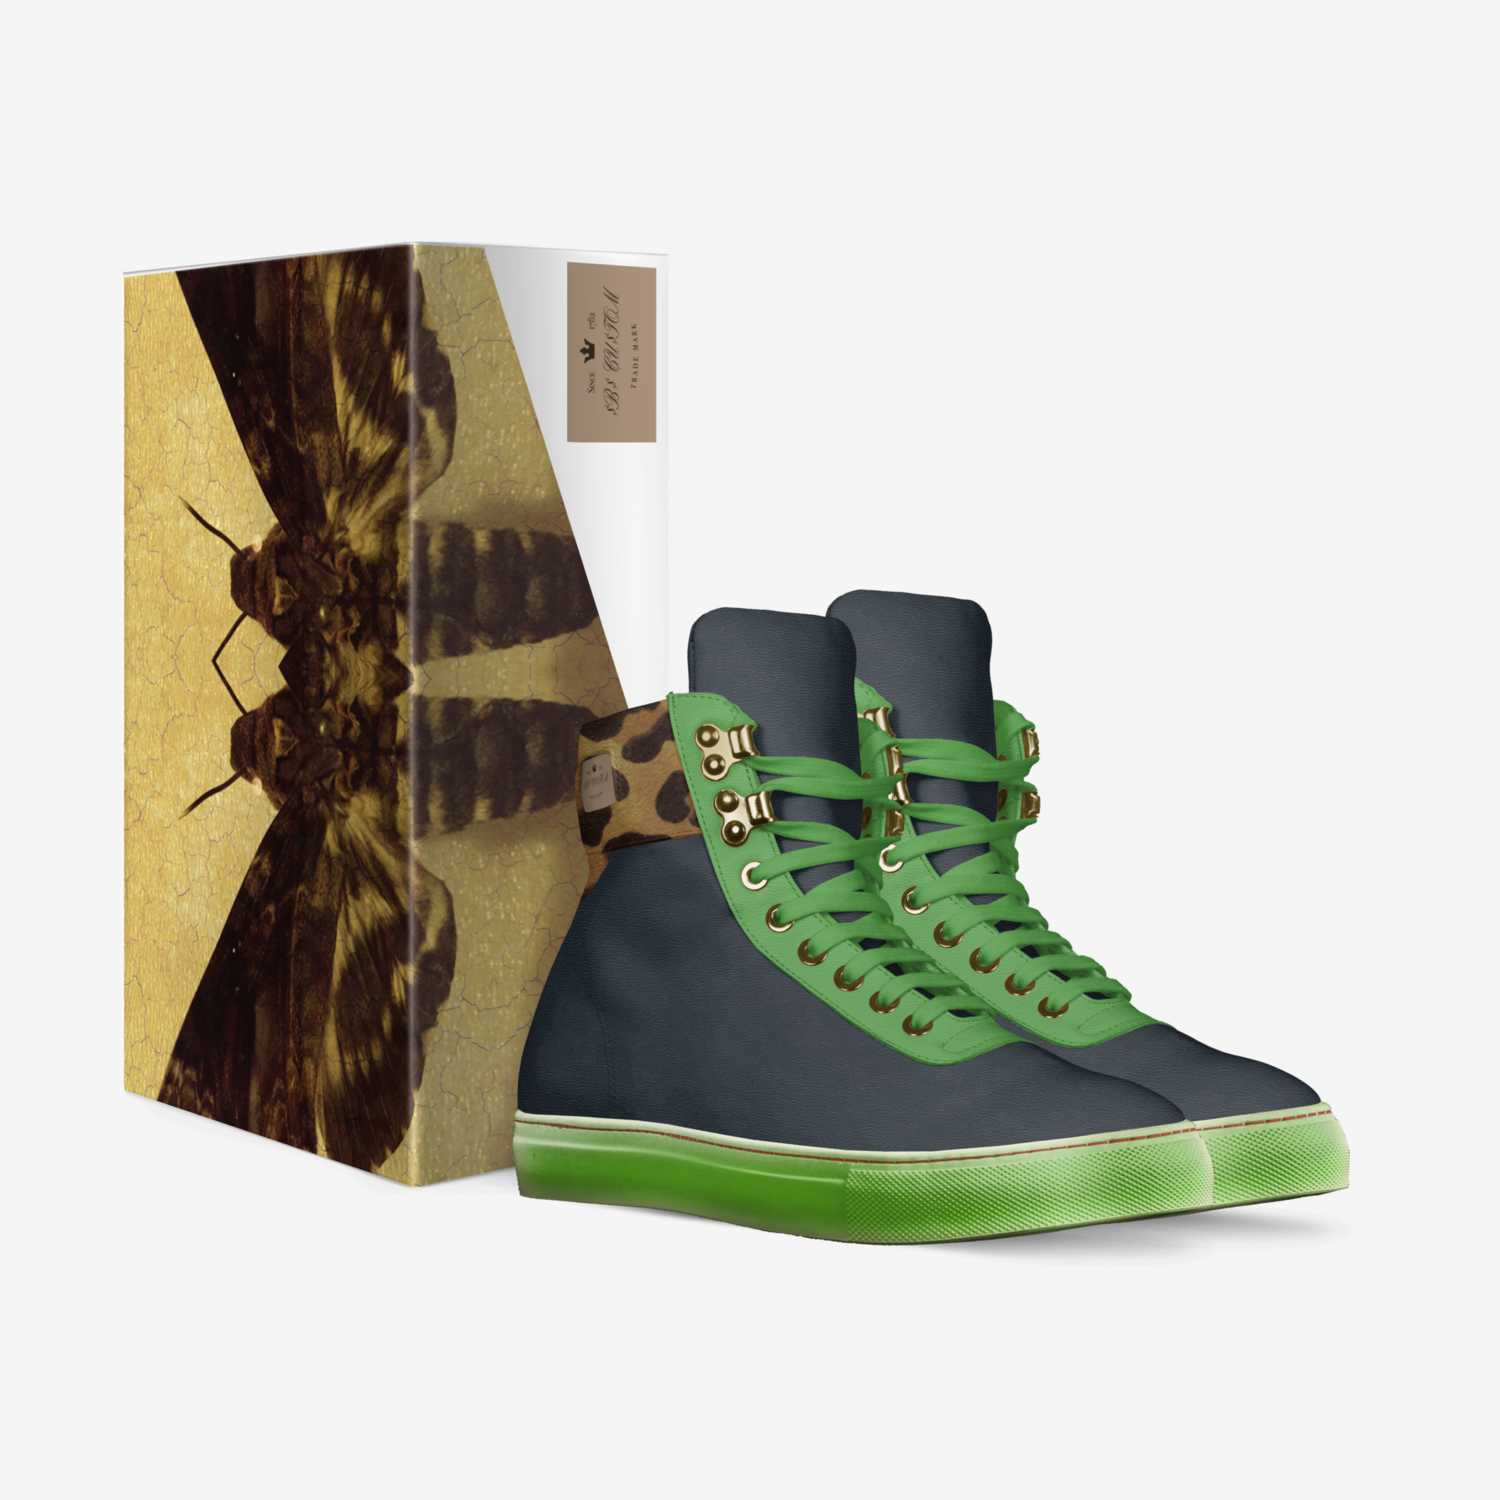 $B$ CU$TOM custom made in Italy shoes by Sacha Raeburn | Box view